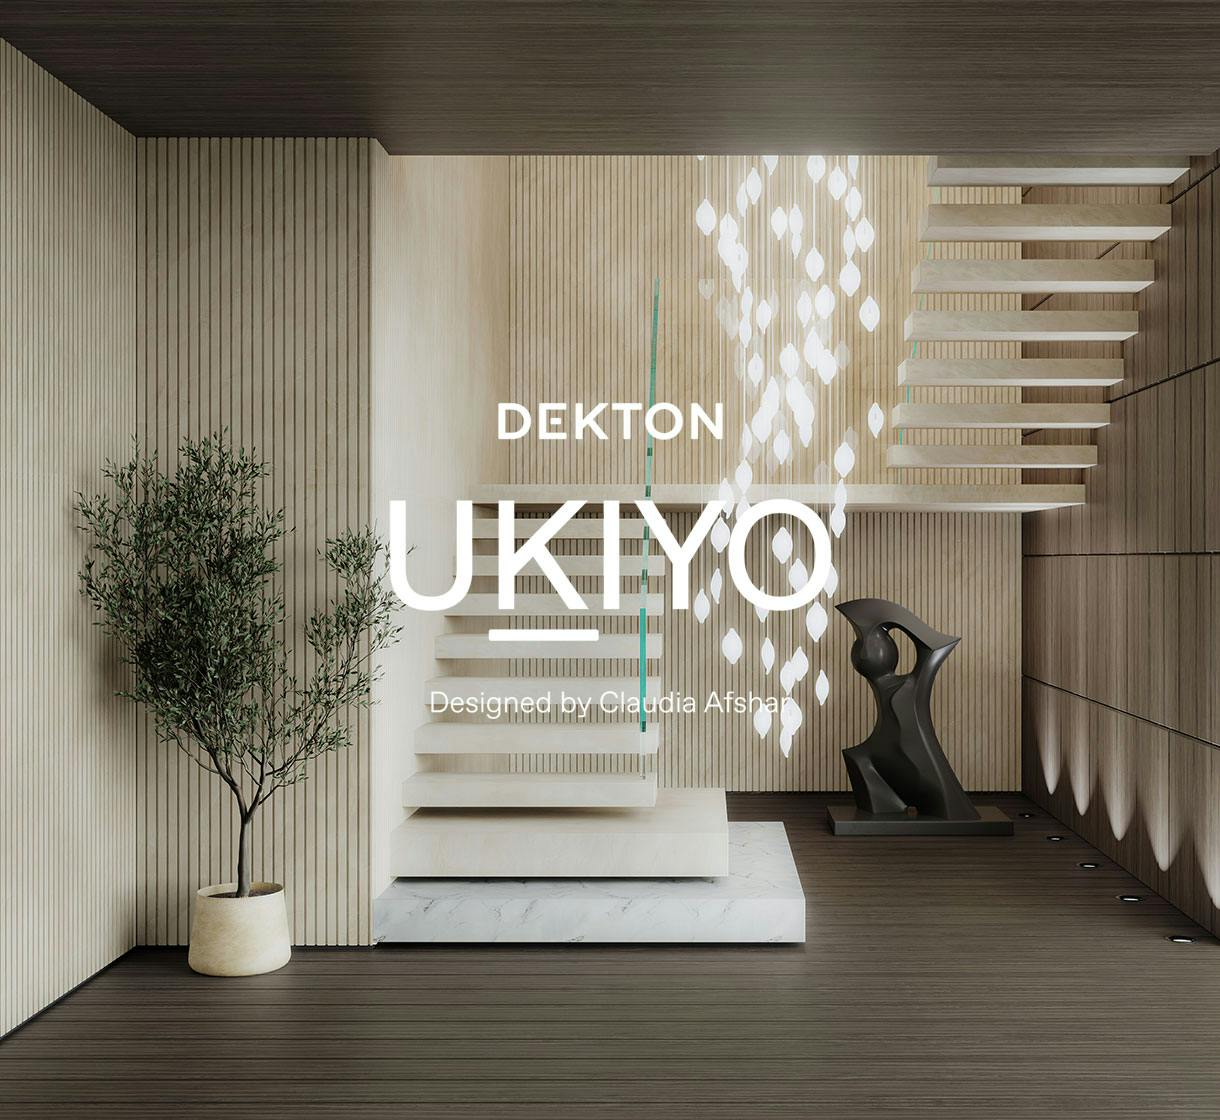 Bildnummer 33 des aktuellen Abschnitts von Cosentino kündigt Dekton® Ukiyo an, die erste geriffelte Kollektion ihrer Art designed by Claudia Afshar von Cosentino Deutschland